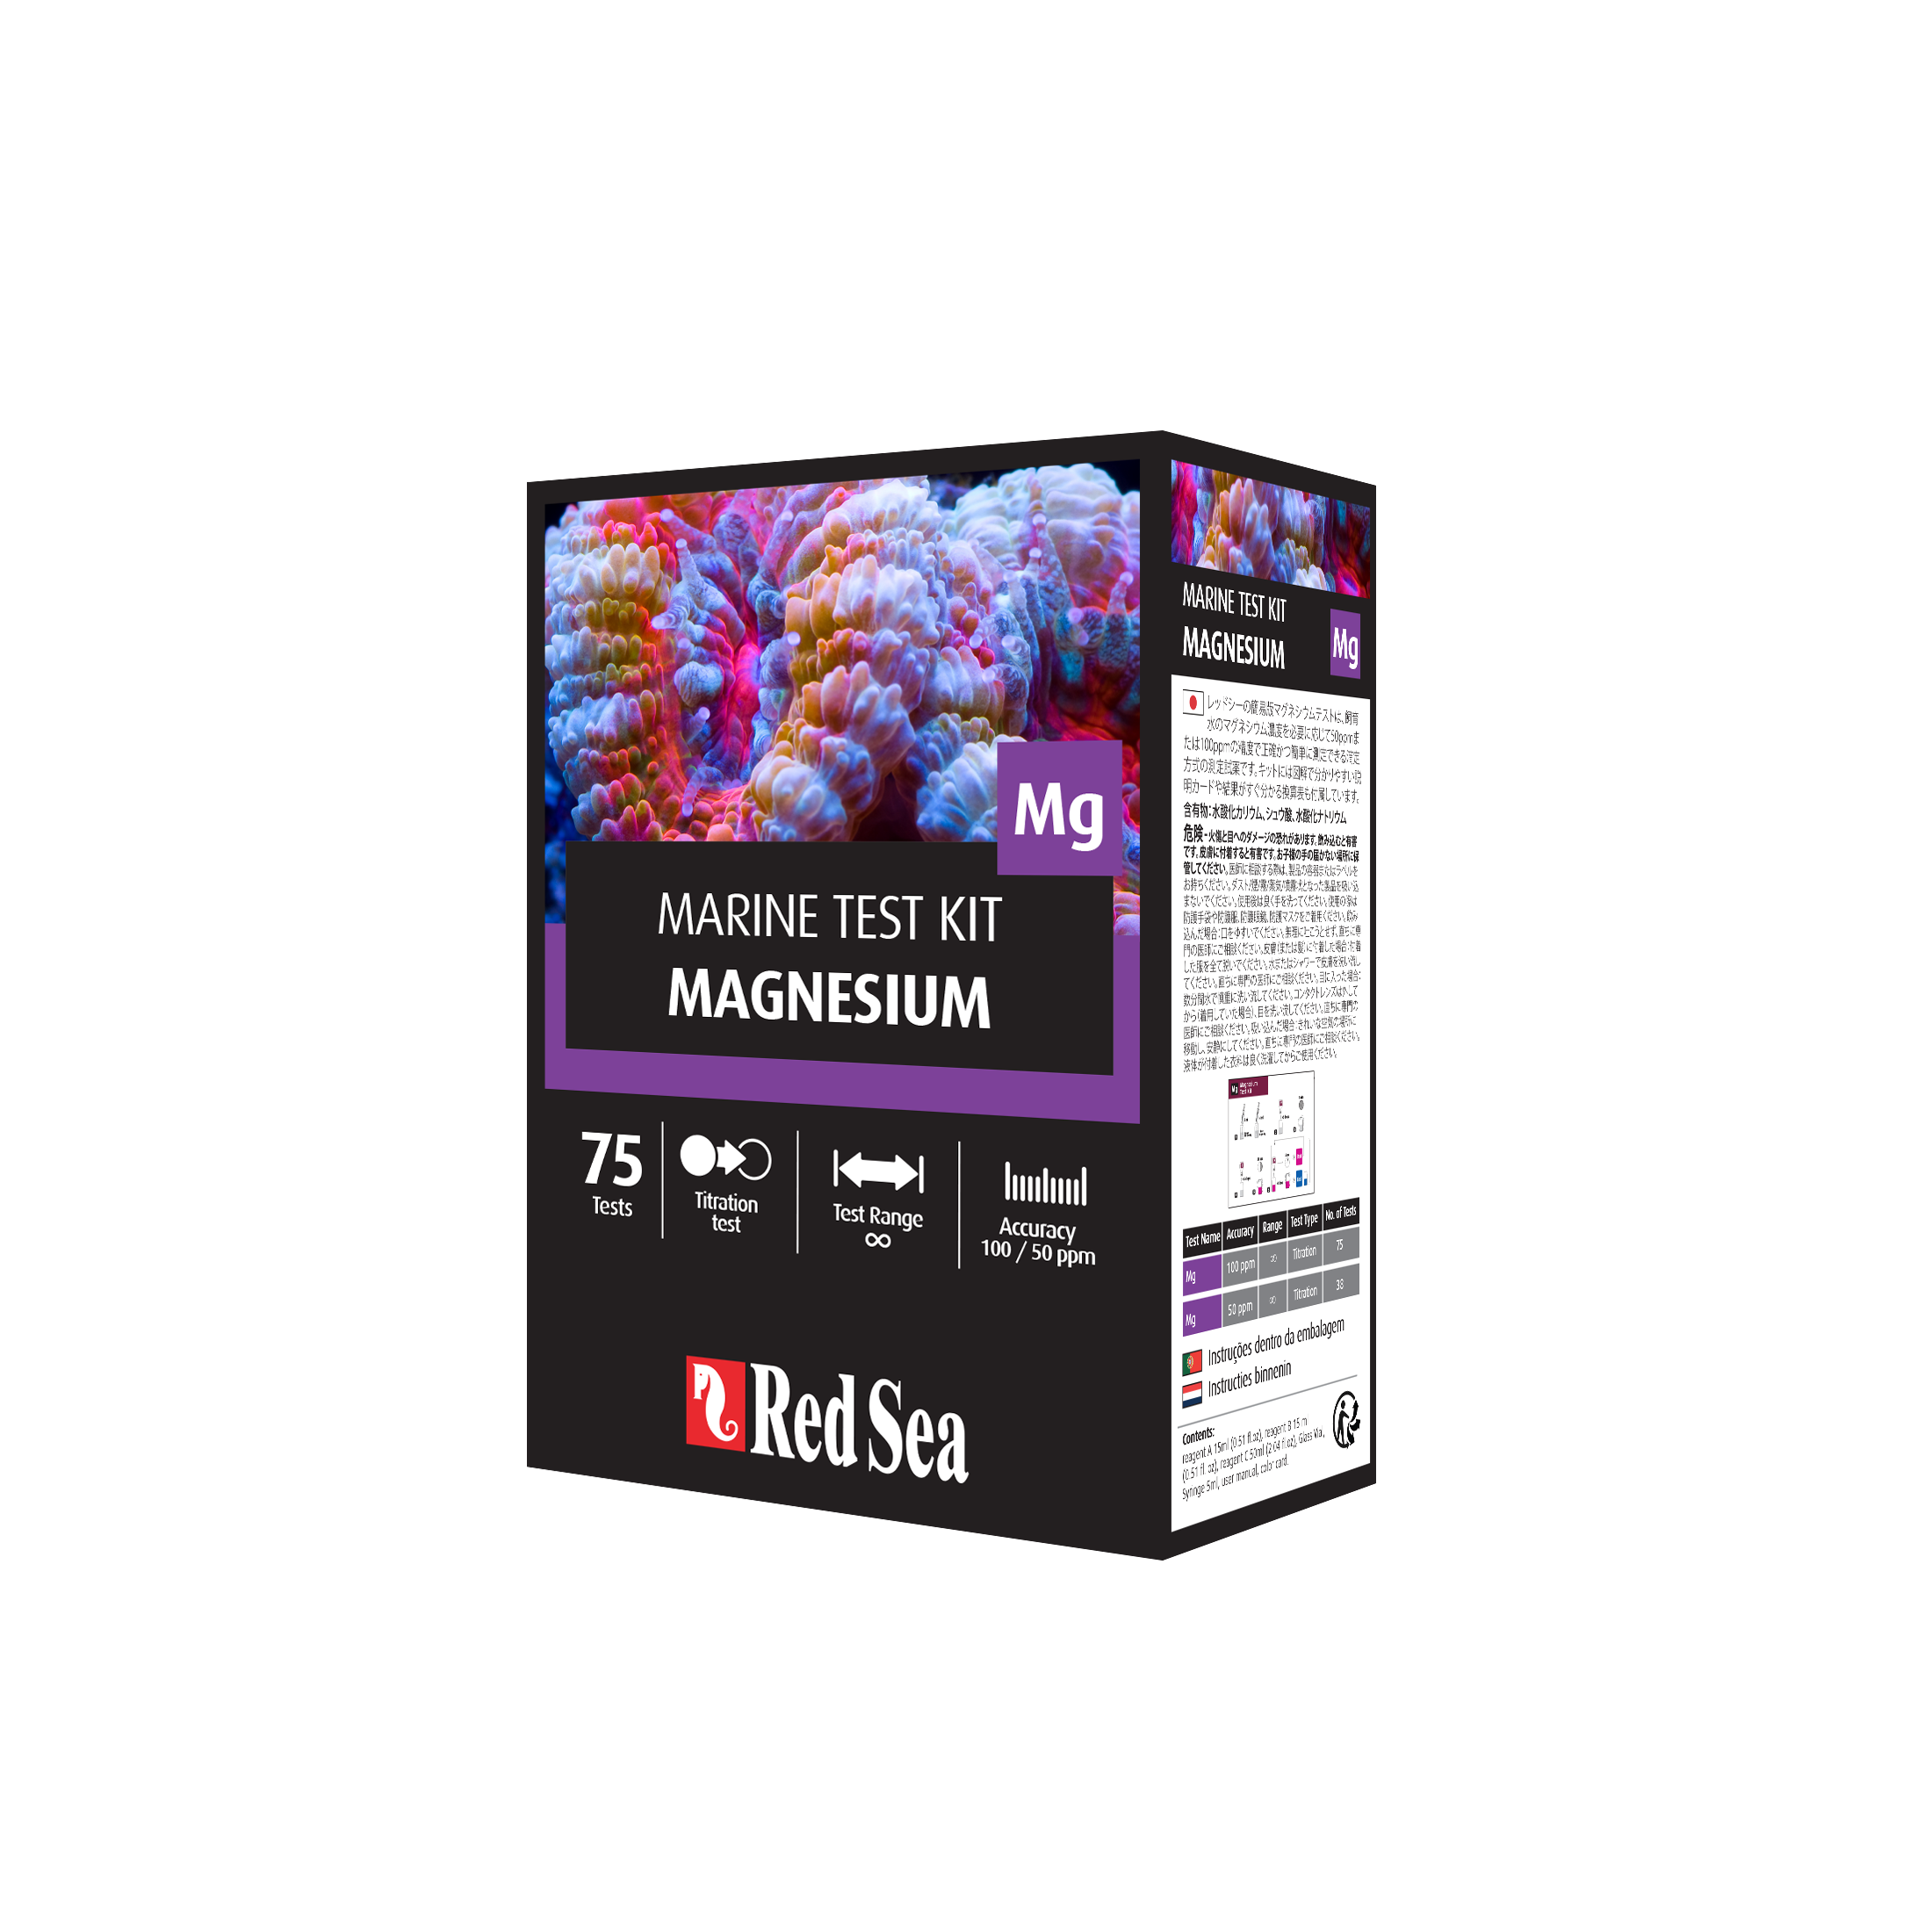 Red sea magnesium test kit